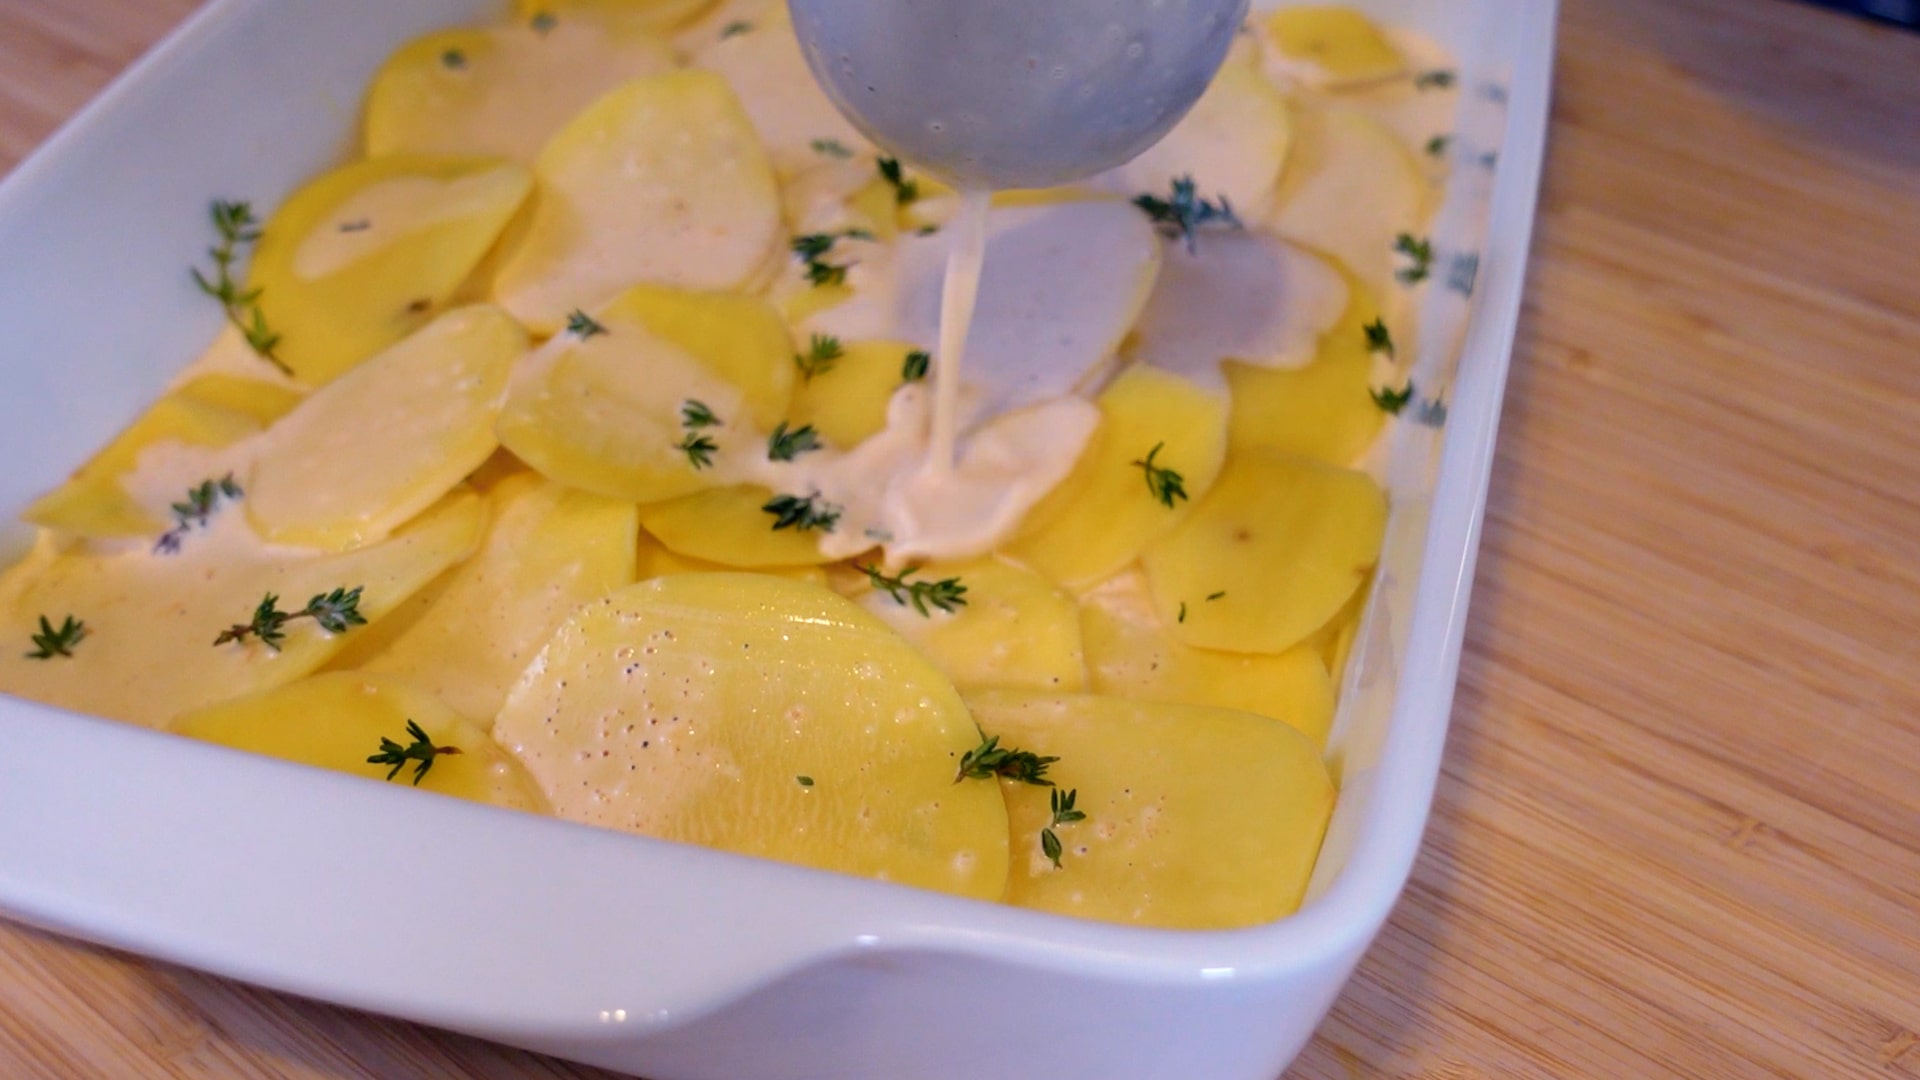 Kartoffelgratin aus rohen Kartoffeln - So gelingt es perfekt!